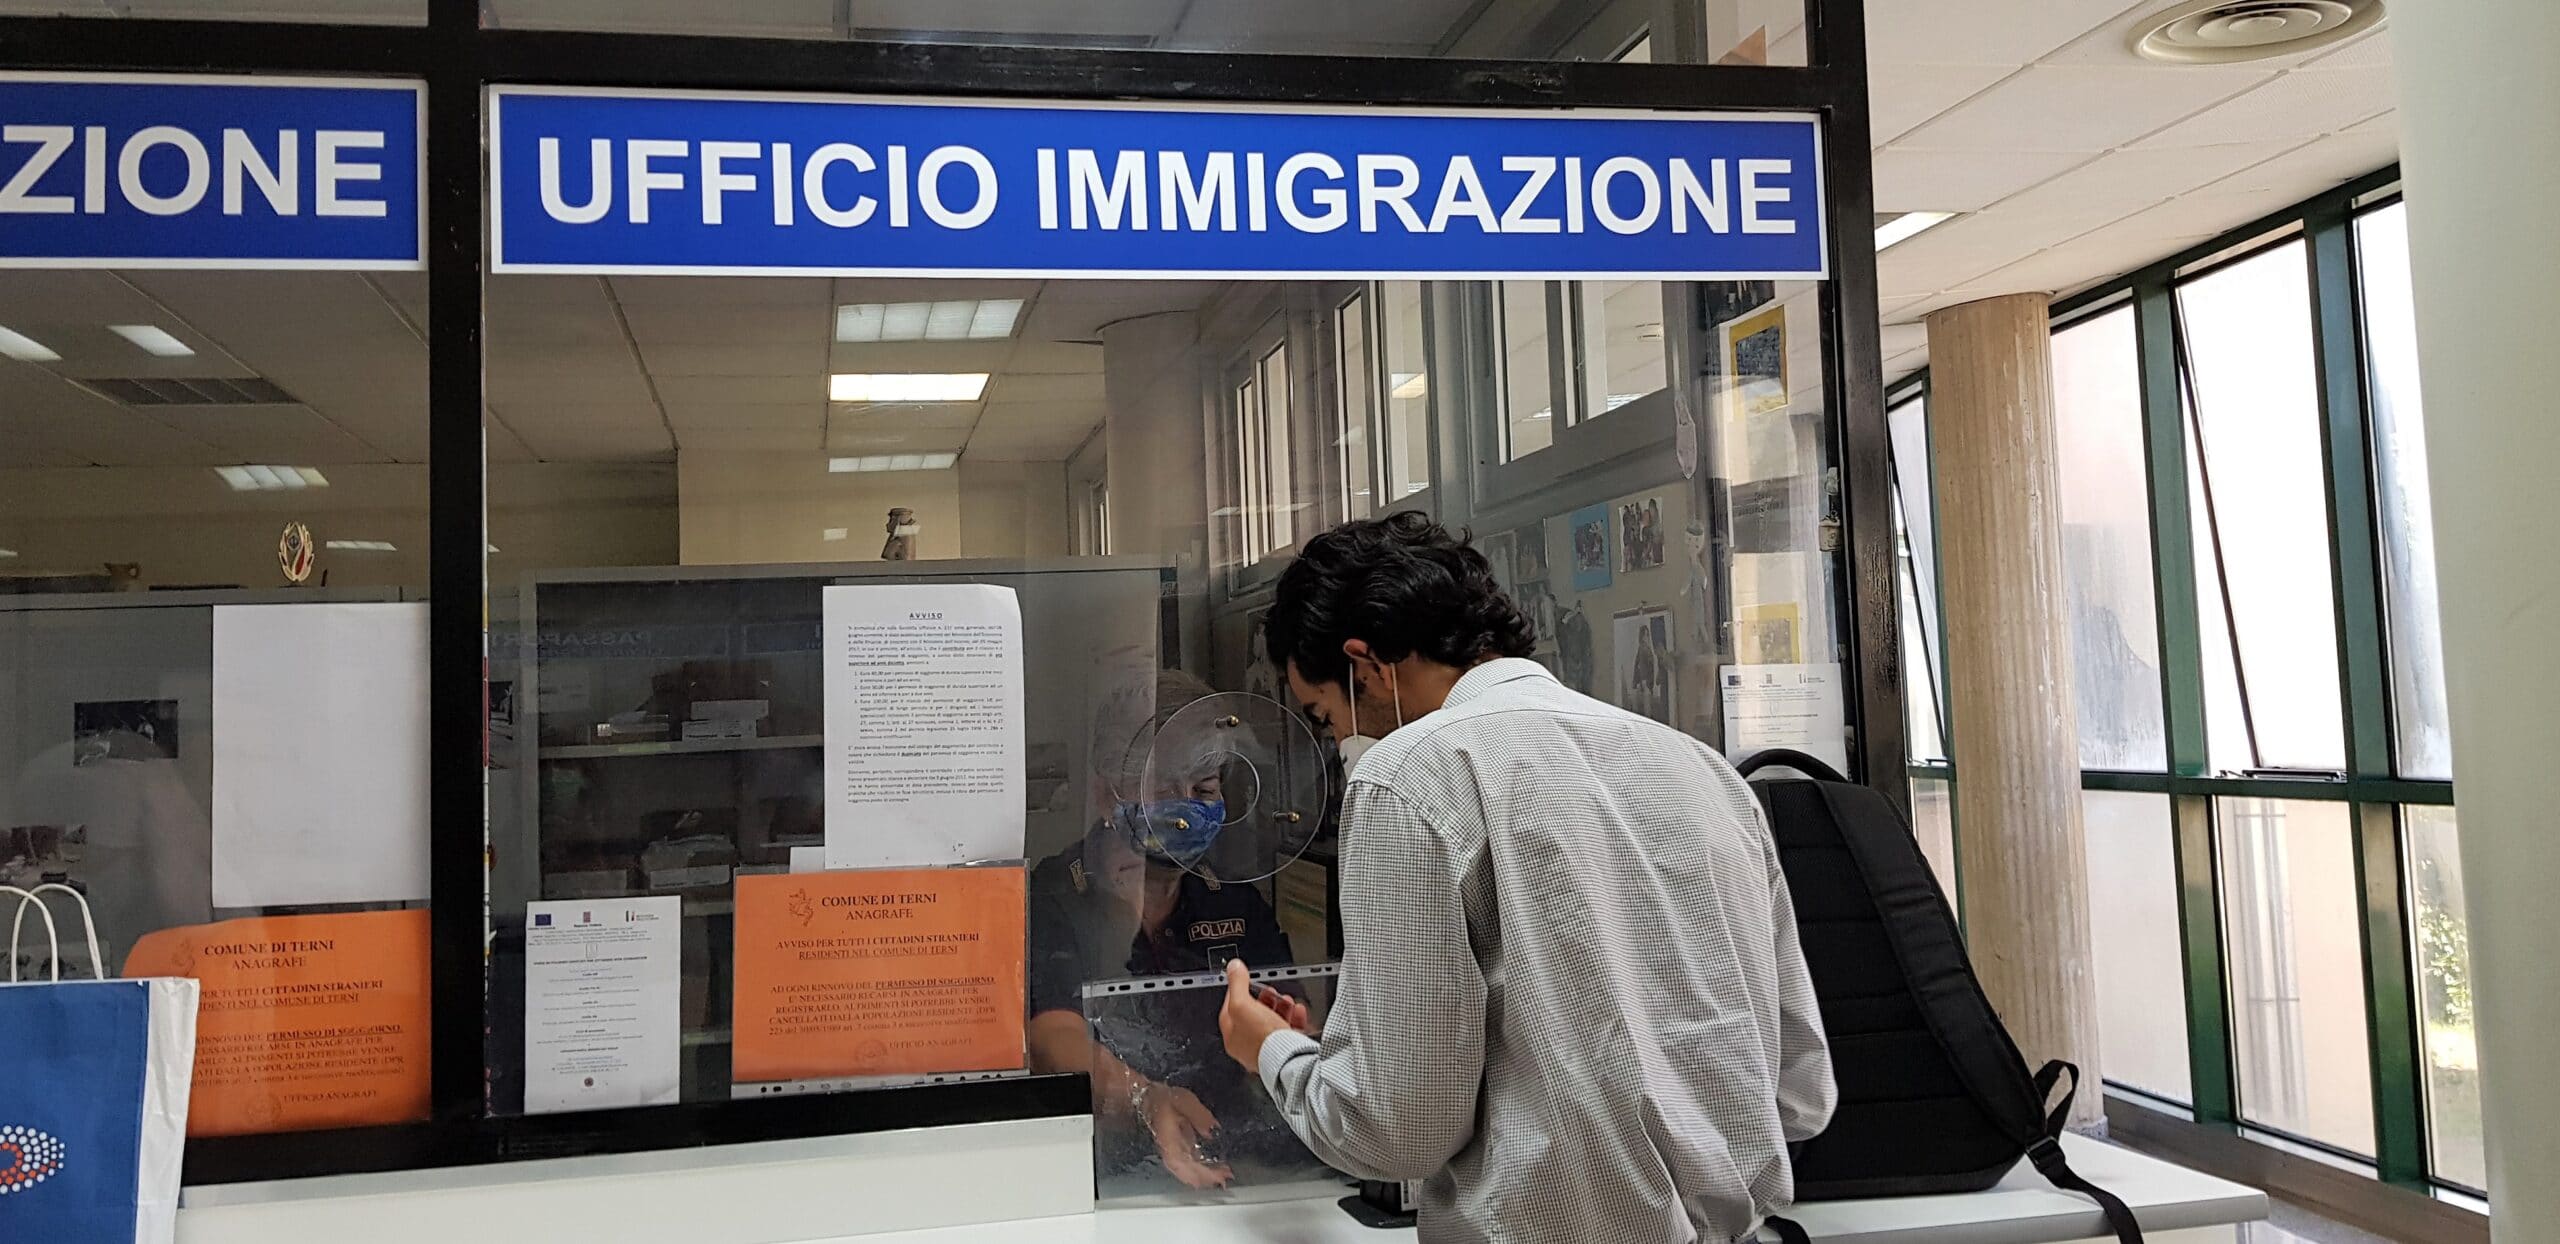 Immigrato o straniero alla questura presso ufficio immigrazione per impronti digitali per il permesso di soggiorno